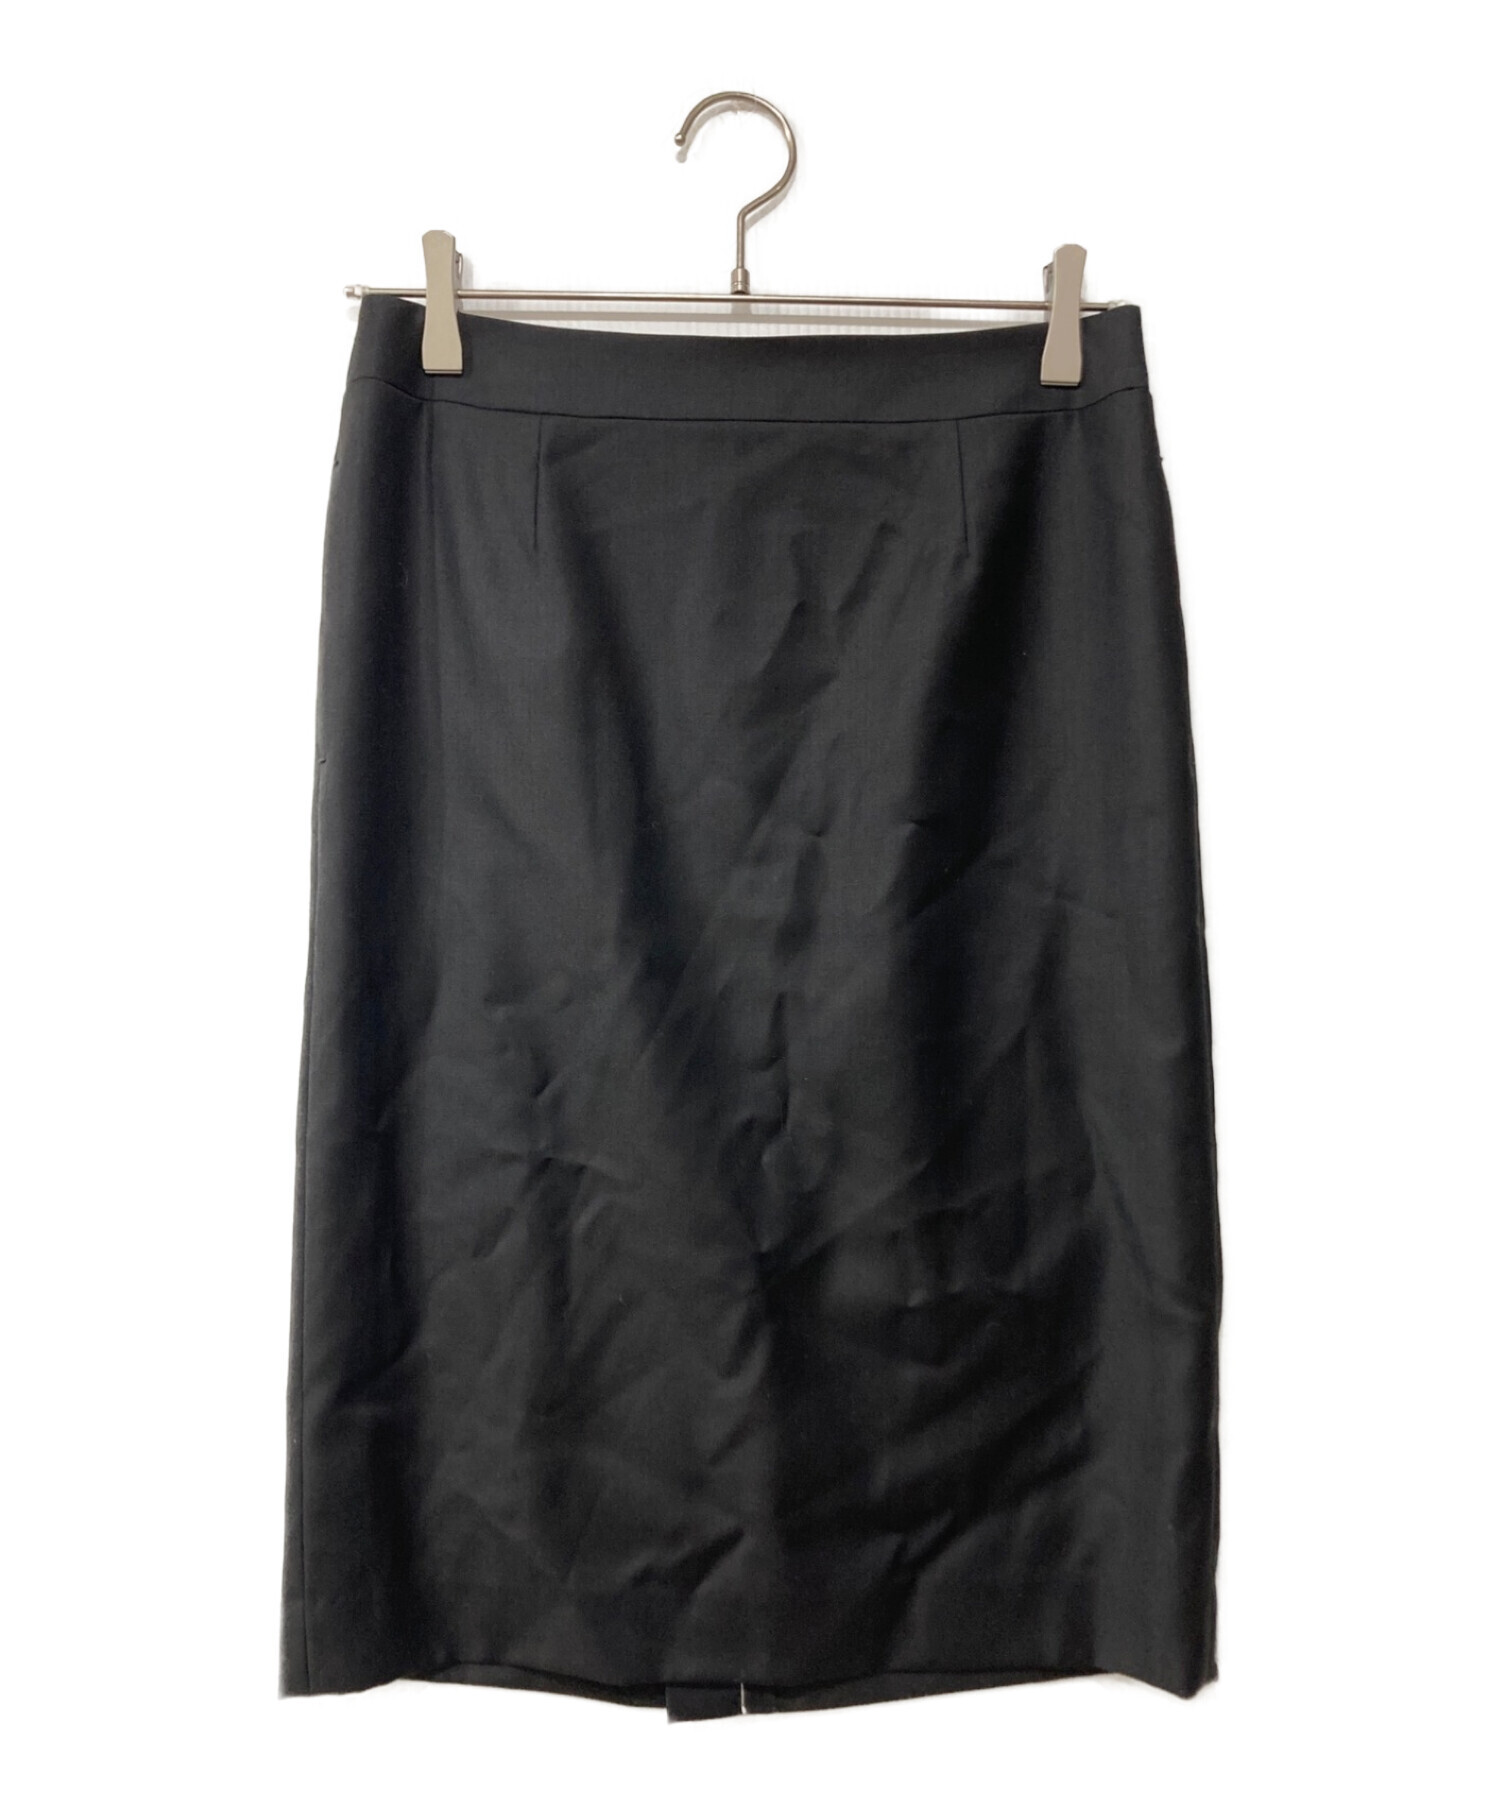 MACKINTOSH LONDON (マッキントッシュ ロンドン) ファインウールスカート ブラック サイズ:38 未使用品